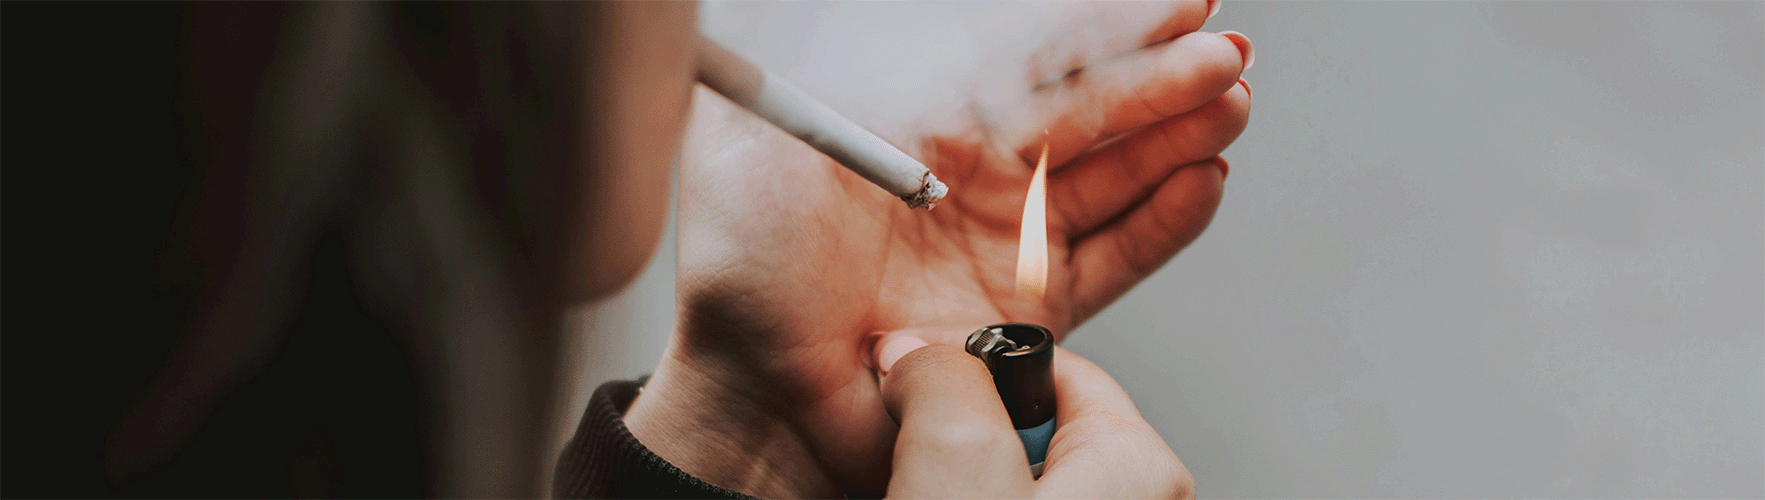  Modifications législatives relatives à la vente de produits à base de tabac